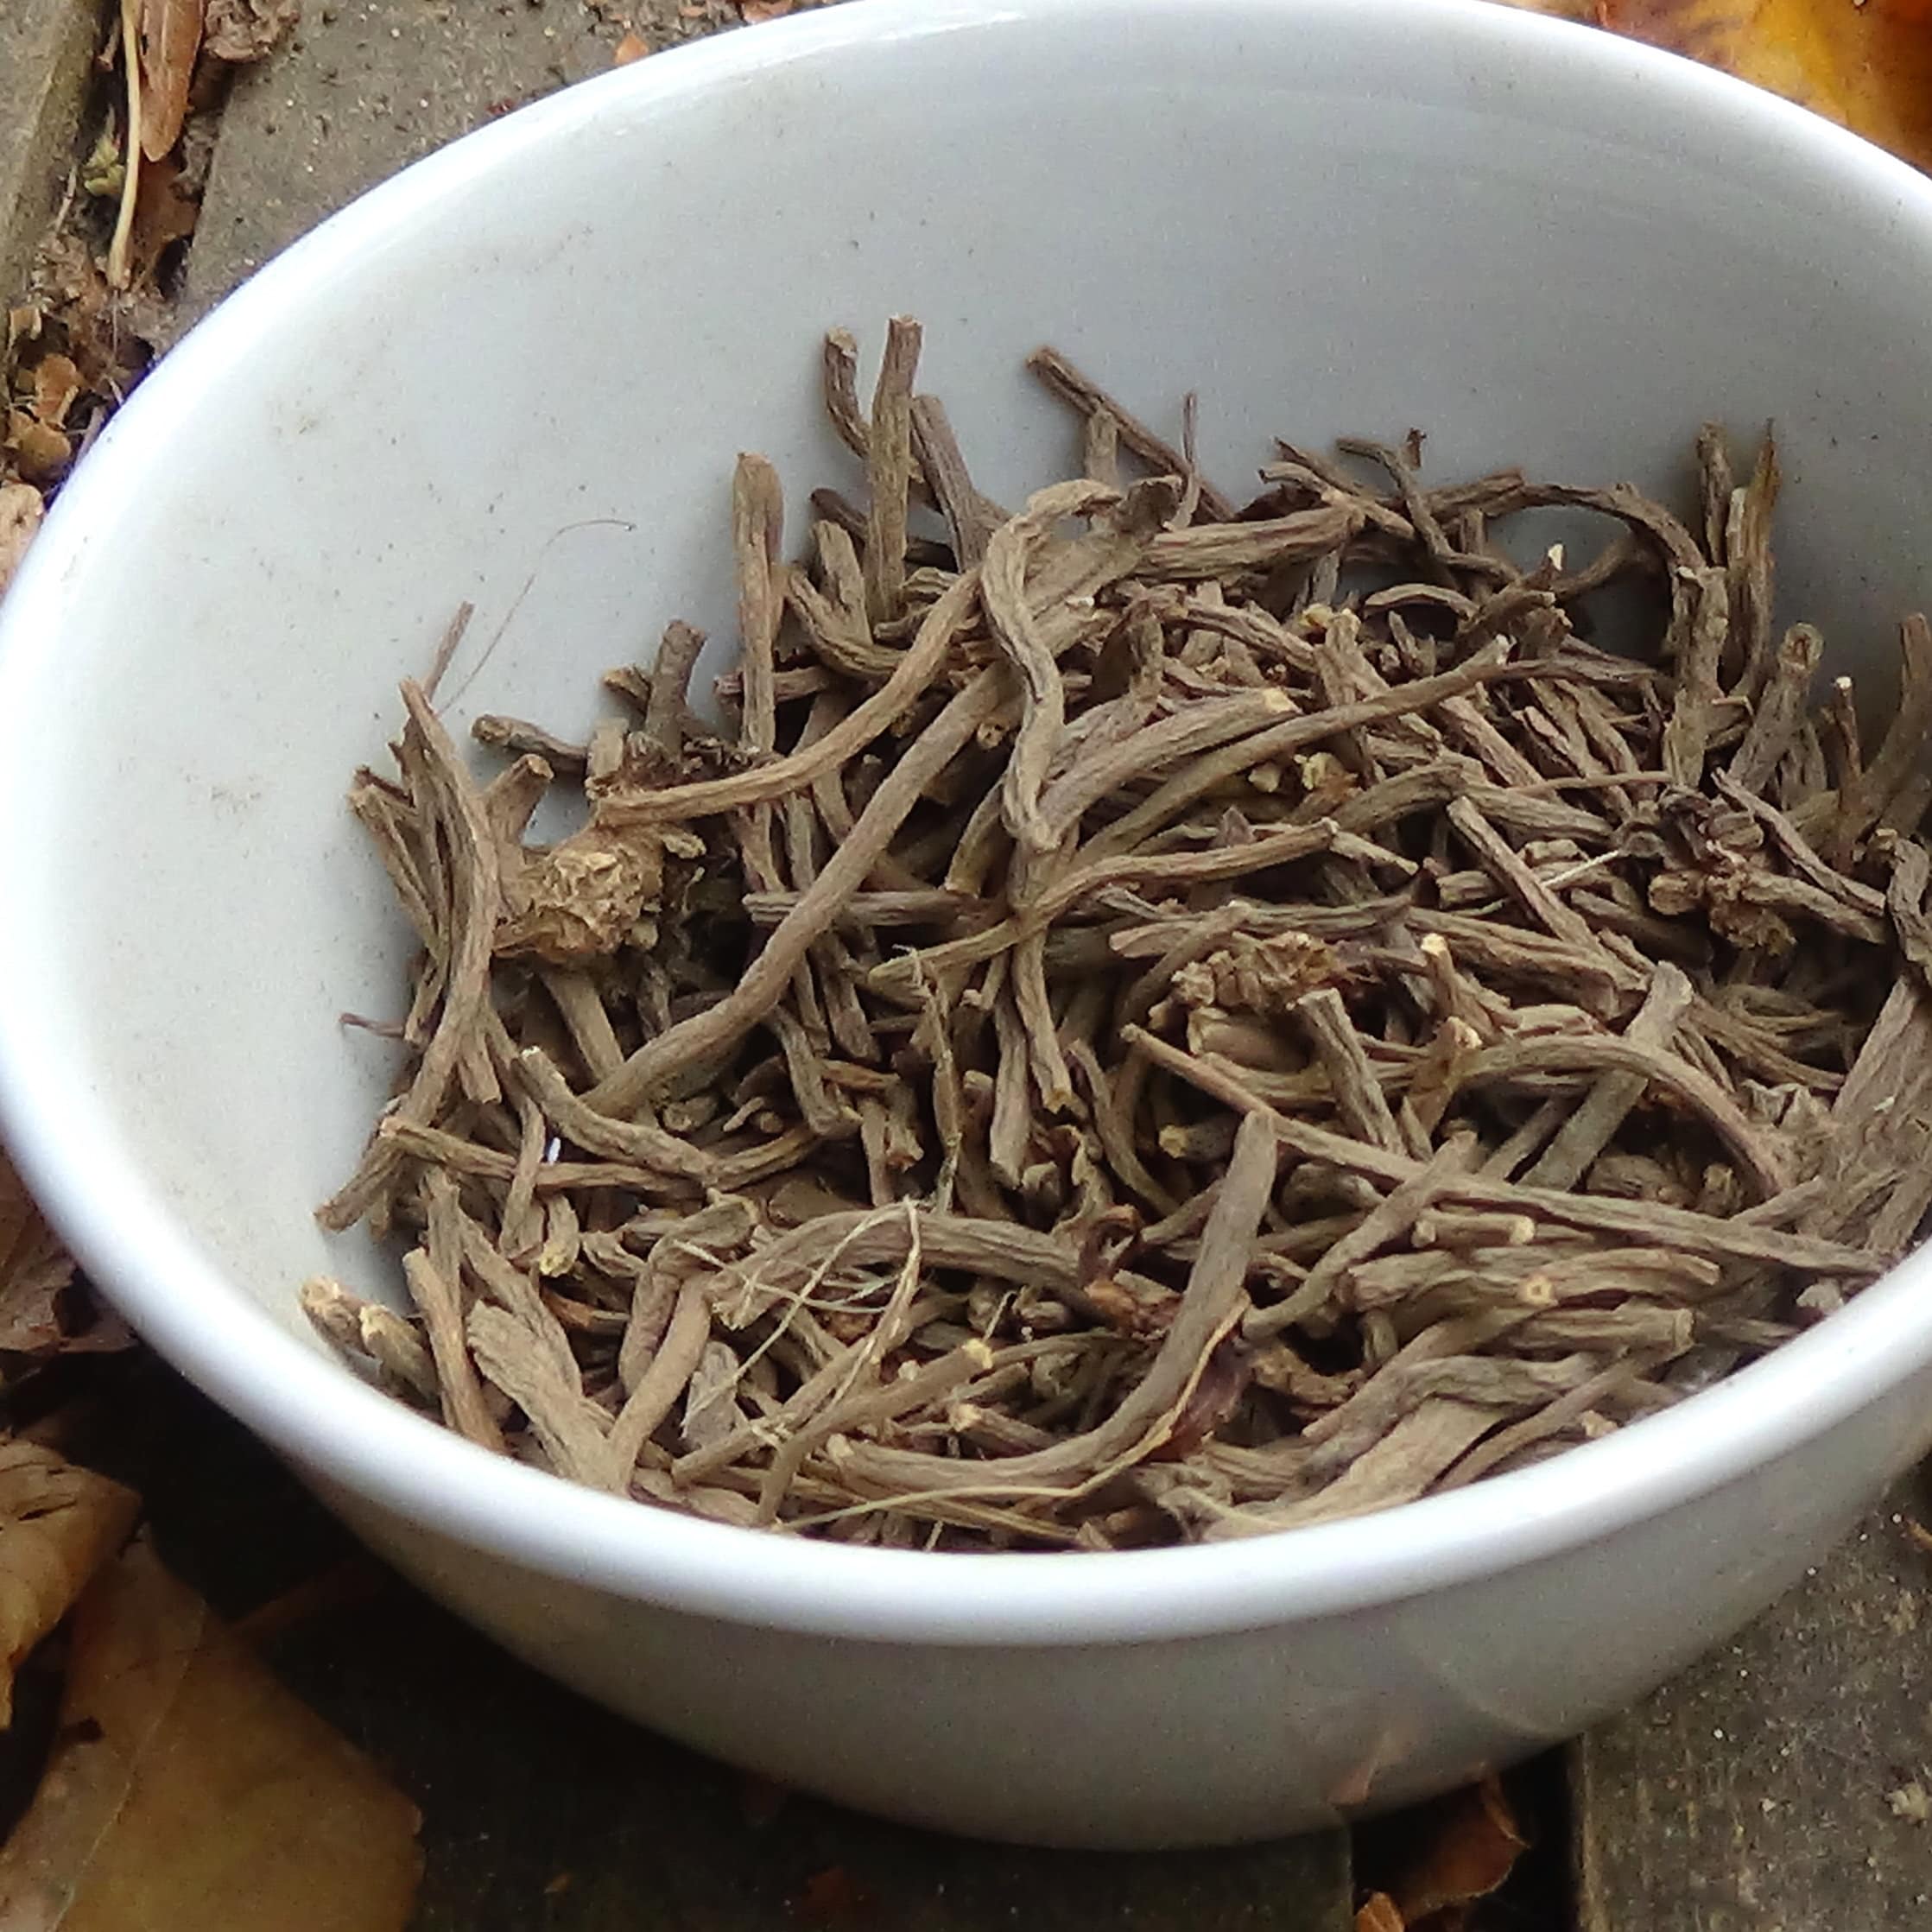 3. How to Prepare Valerian Root Tea